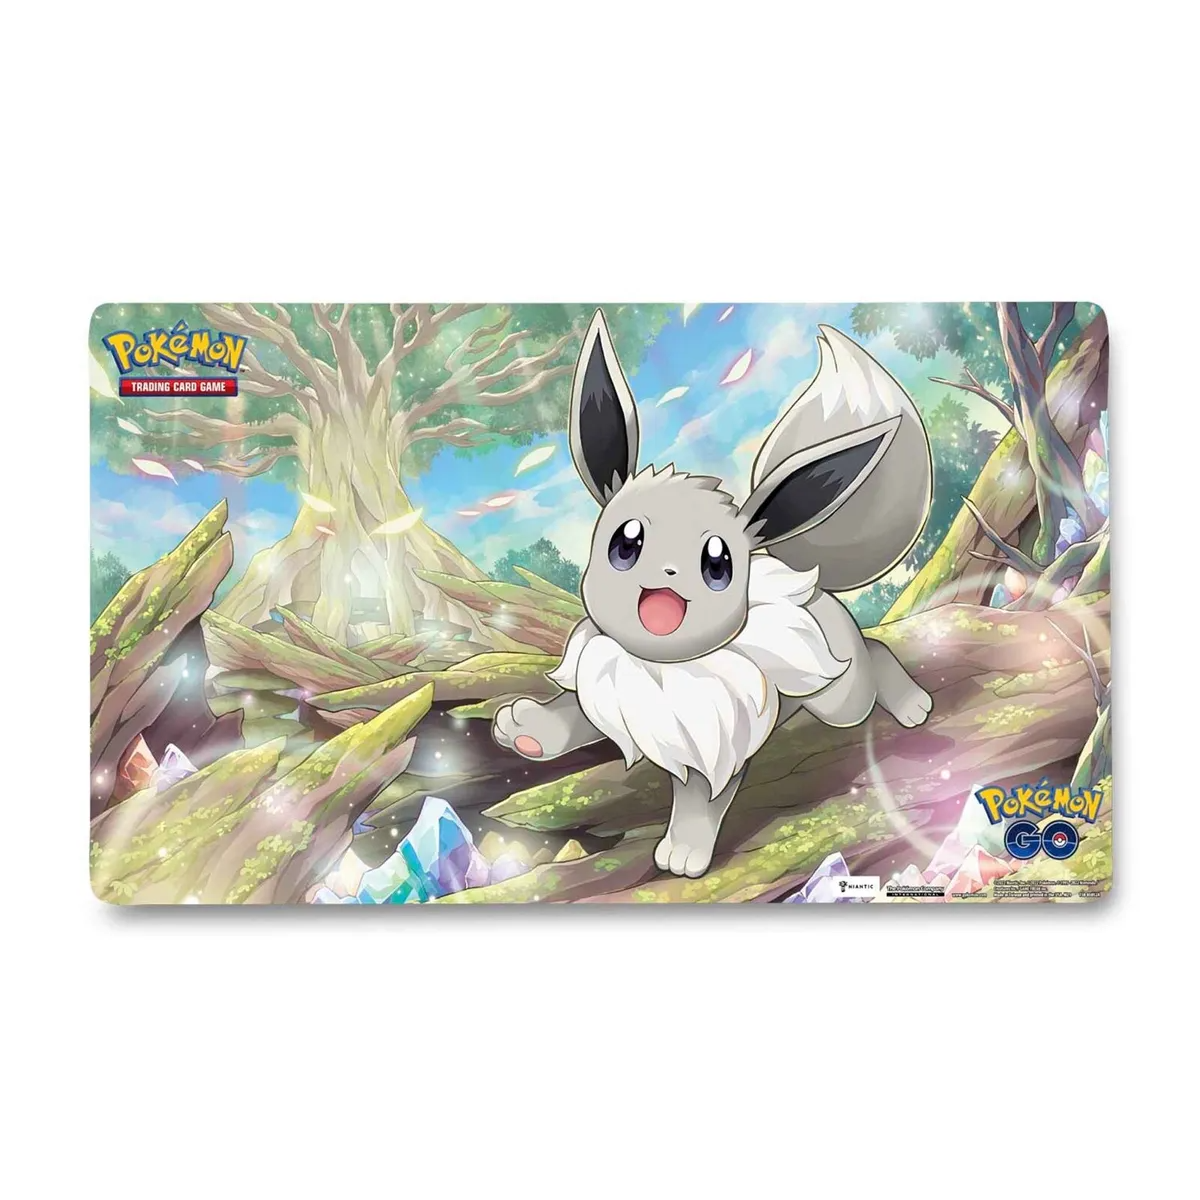 Radiant Eevee Pokemon GO Premium Collection Playmat